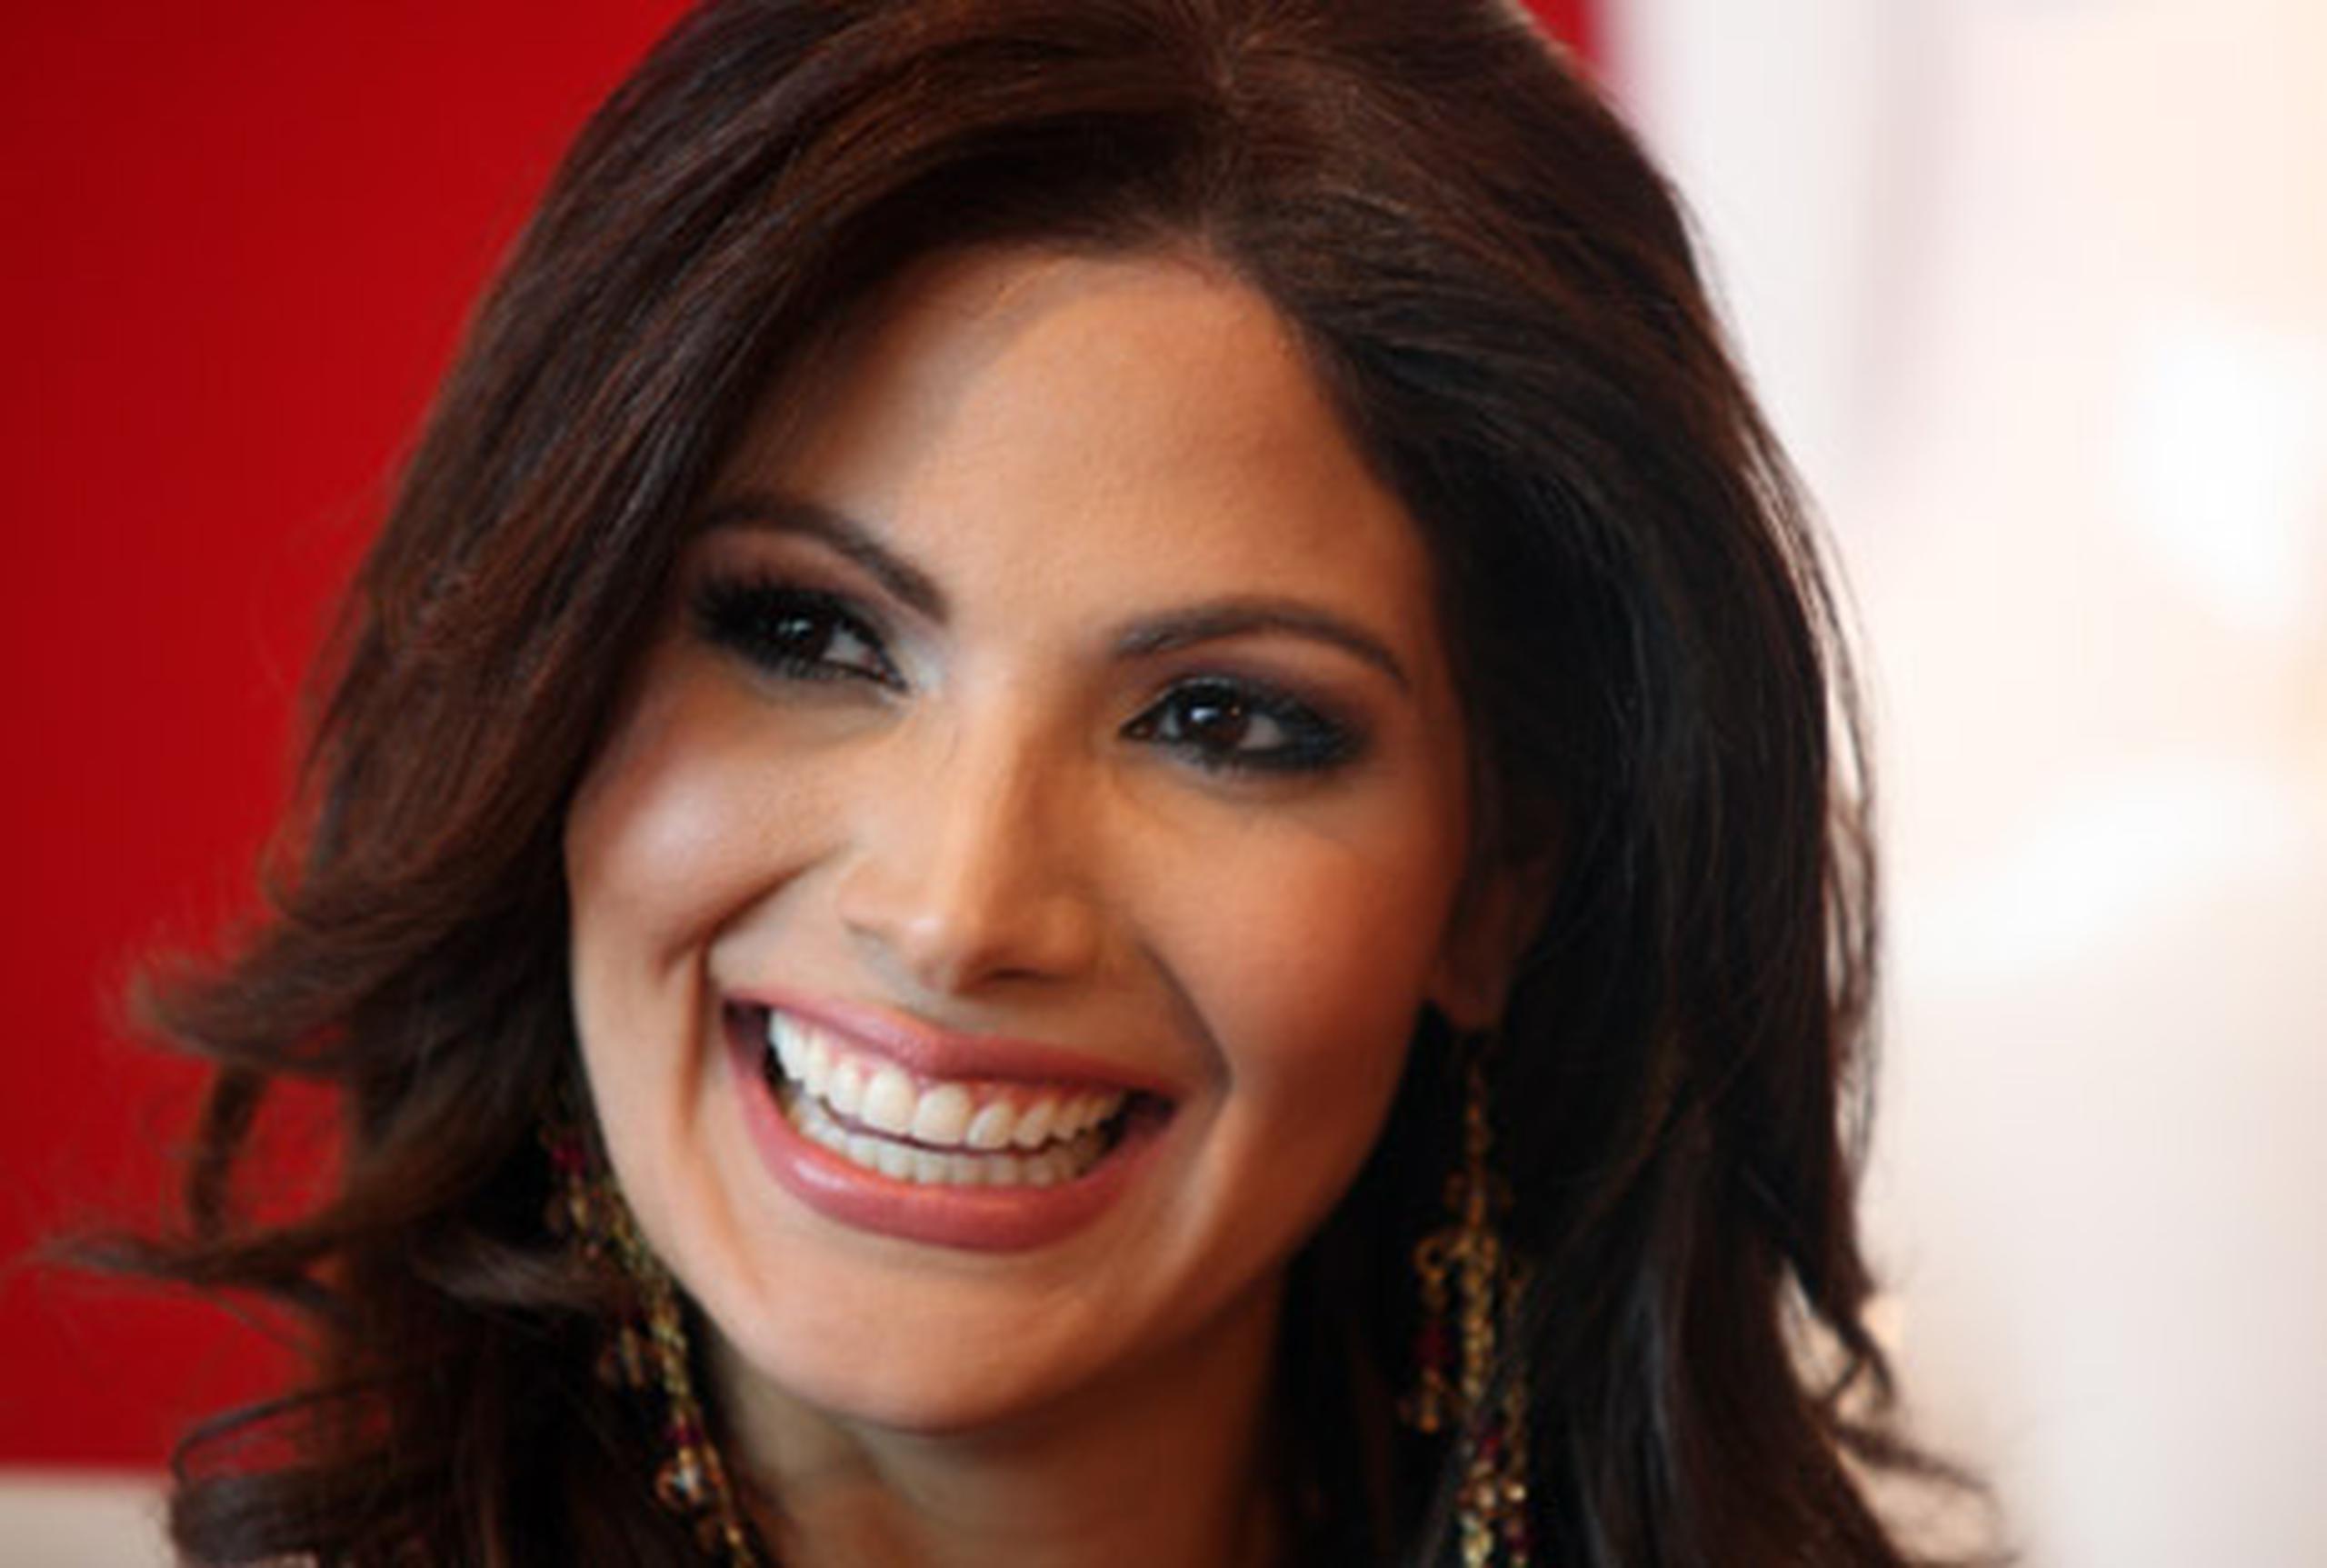 La Miss Universe Puerto Rico 2005 ha sorprendido con su interpretación de “Lucy”, una masajista obsesionada con un hombre casado en la exitosa telenovela "Alguien Te Mira". (Archivo)